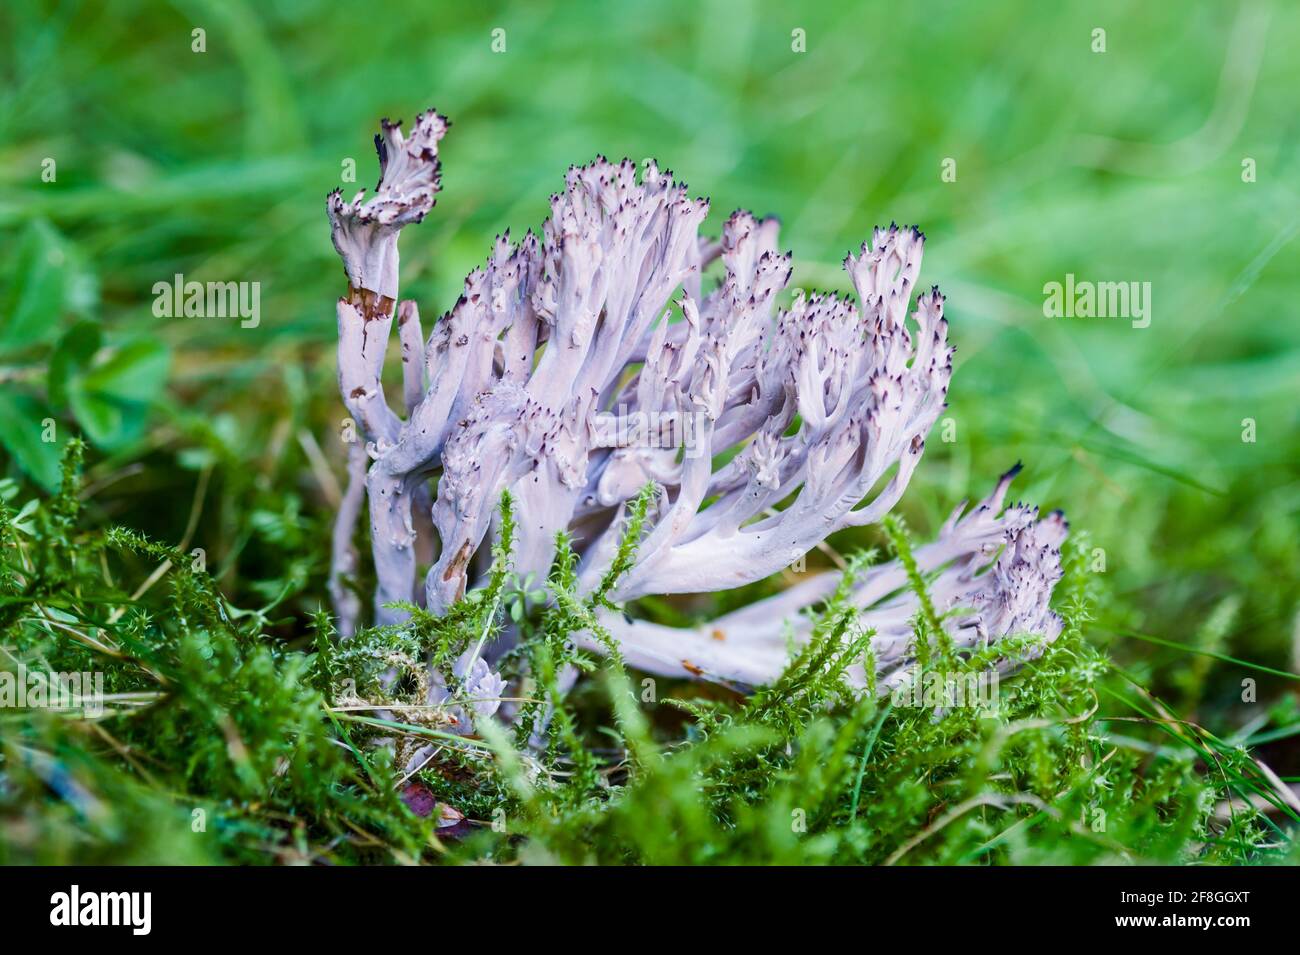 Fungo corallo grigio Clavulina cinerea che cresce in un bosco sotto Betulla nelle Highlands della Scozia Foto Stock